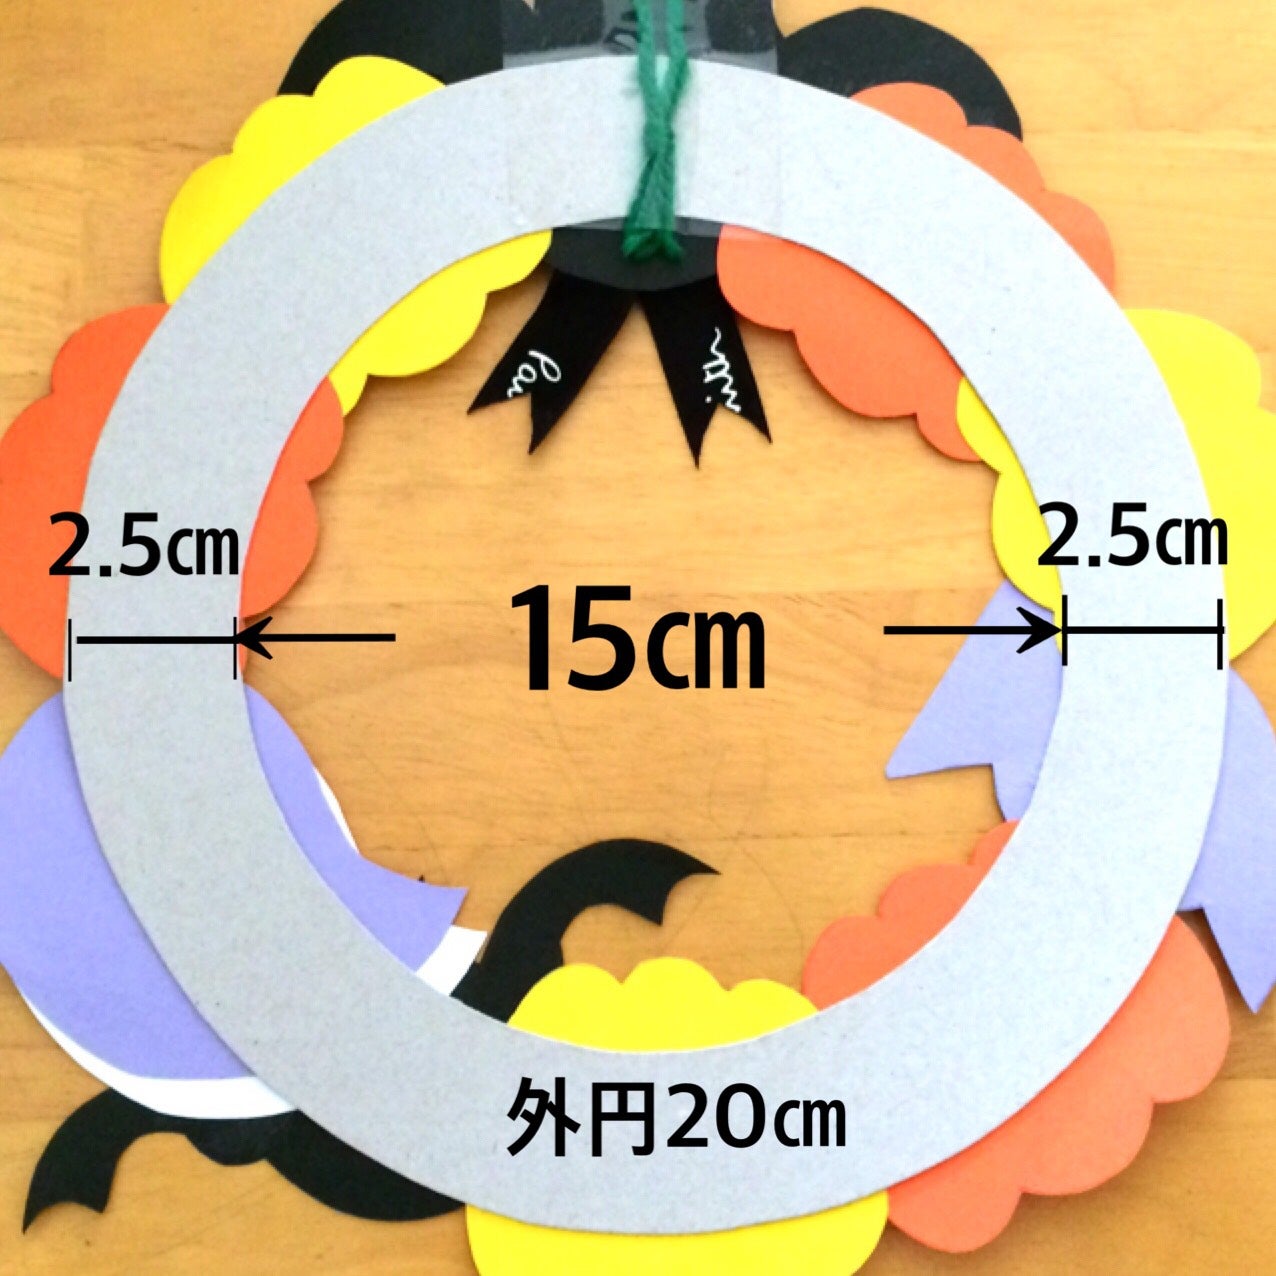 ハロウィン飾りを簡単工作 100均 色画用紙や折り紙で作る 5選 リビング埼玉web